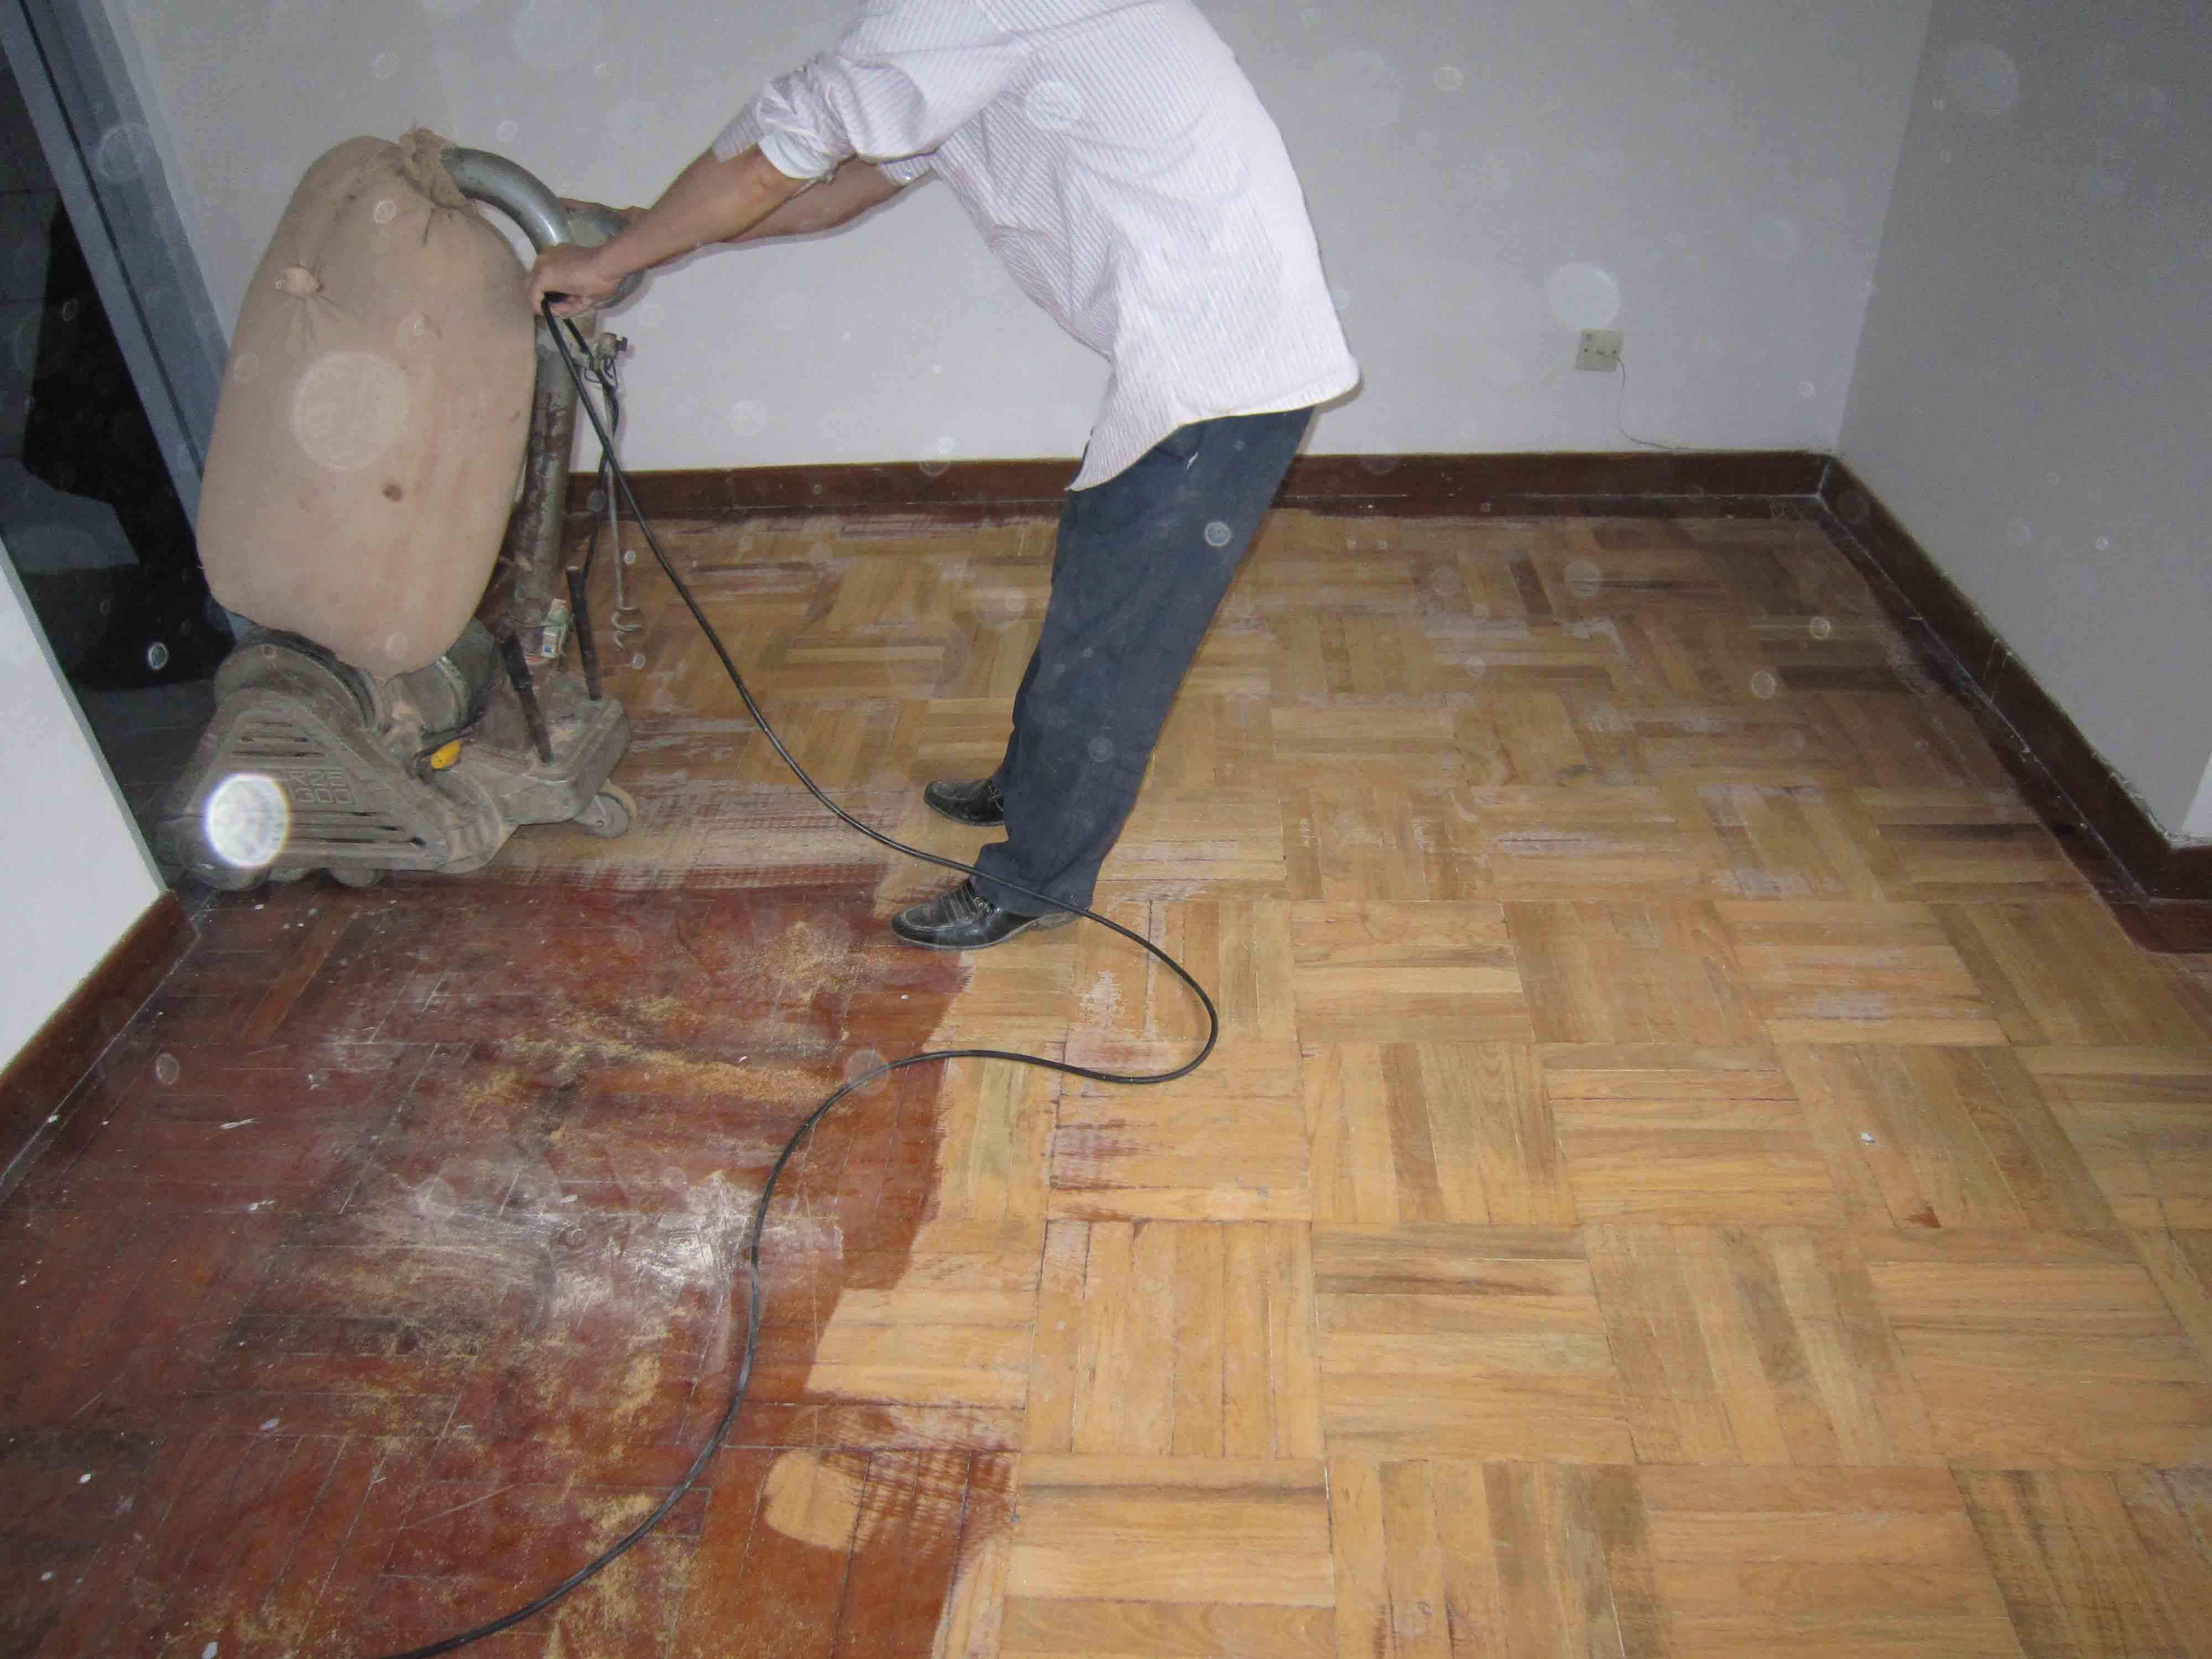 旧地板翻新应该怎样做 方法用对在旧的地板也可以焕新